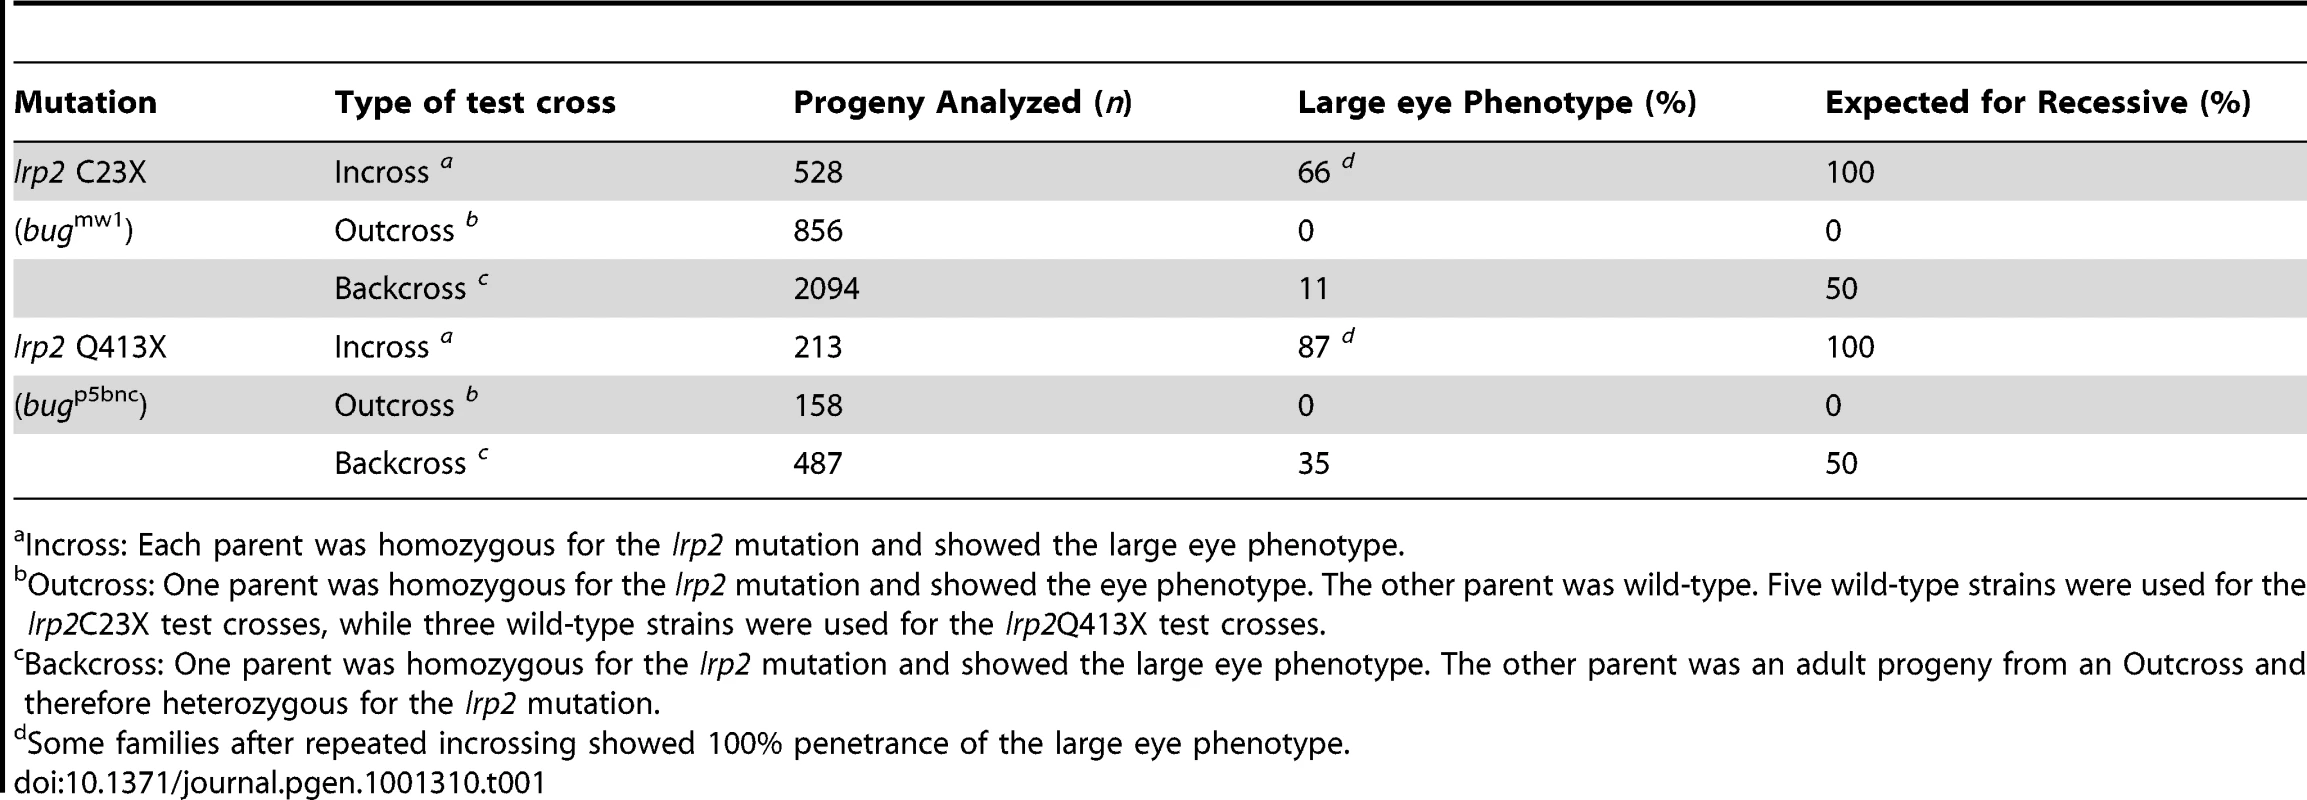 Inheritance and penetrance of large eye phenotype.